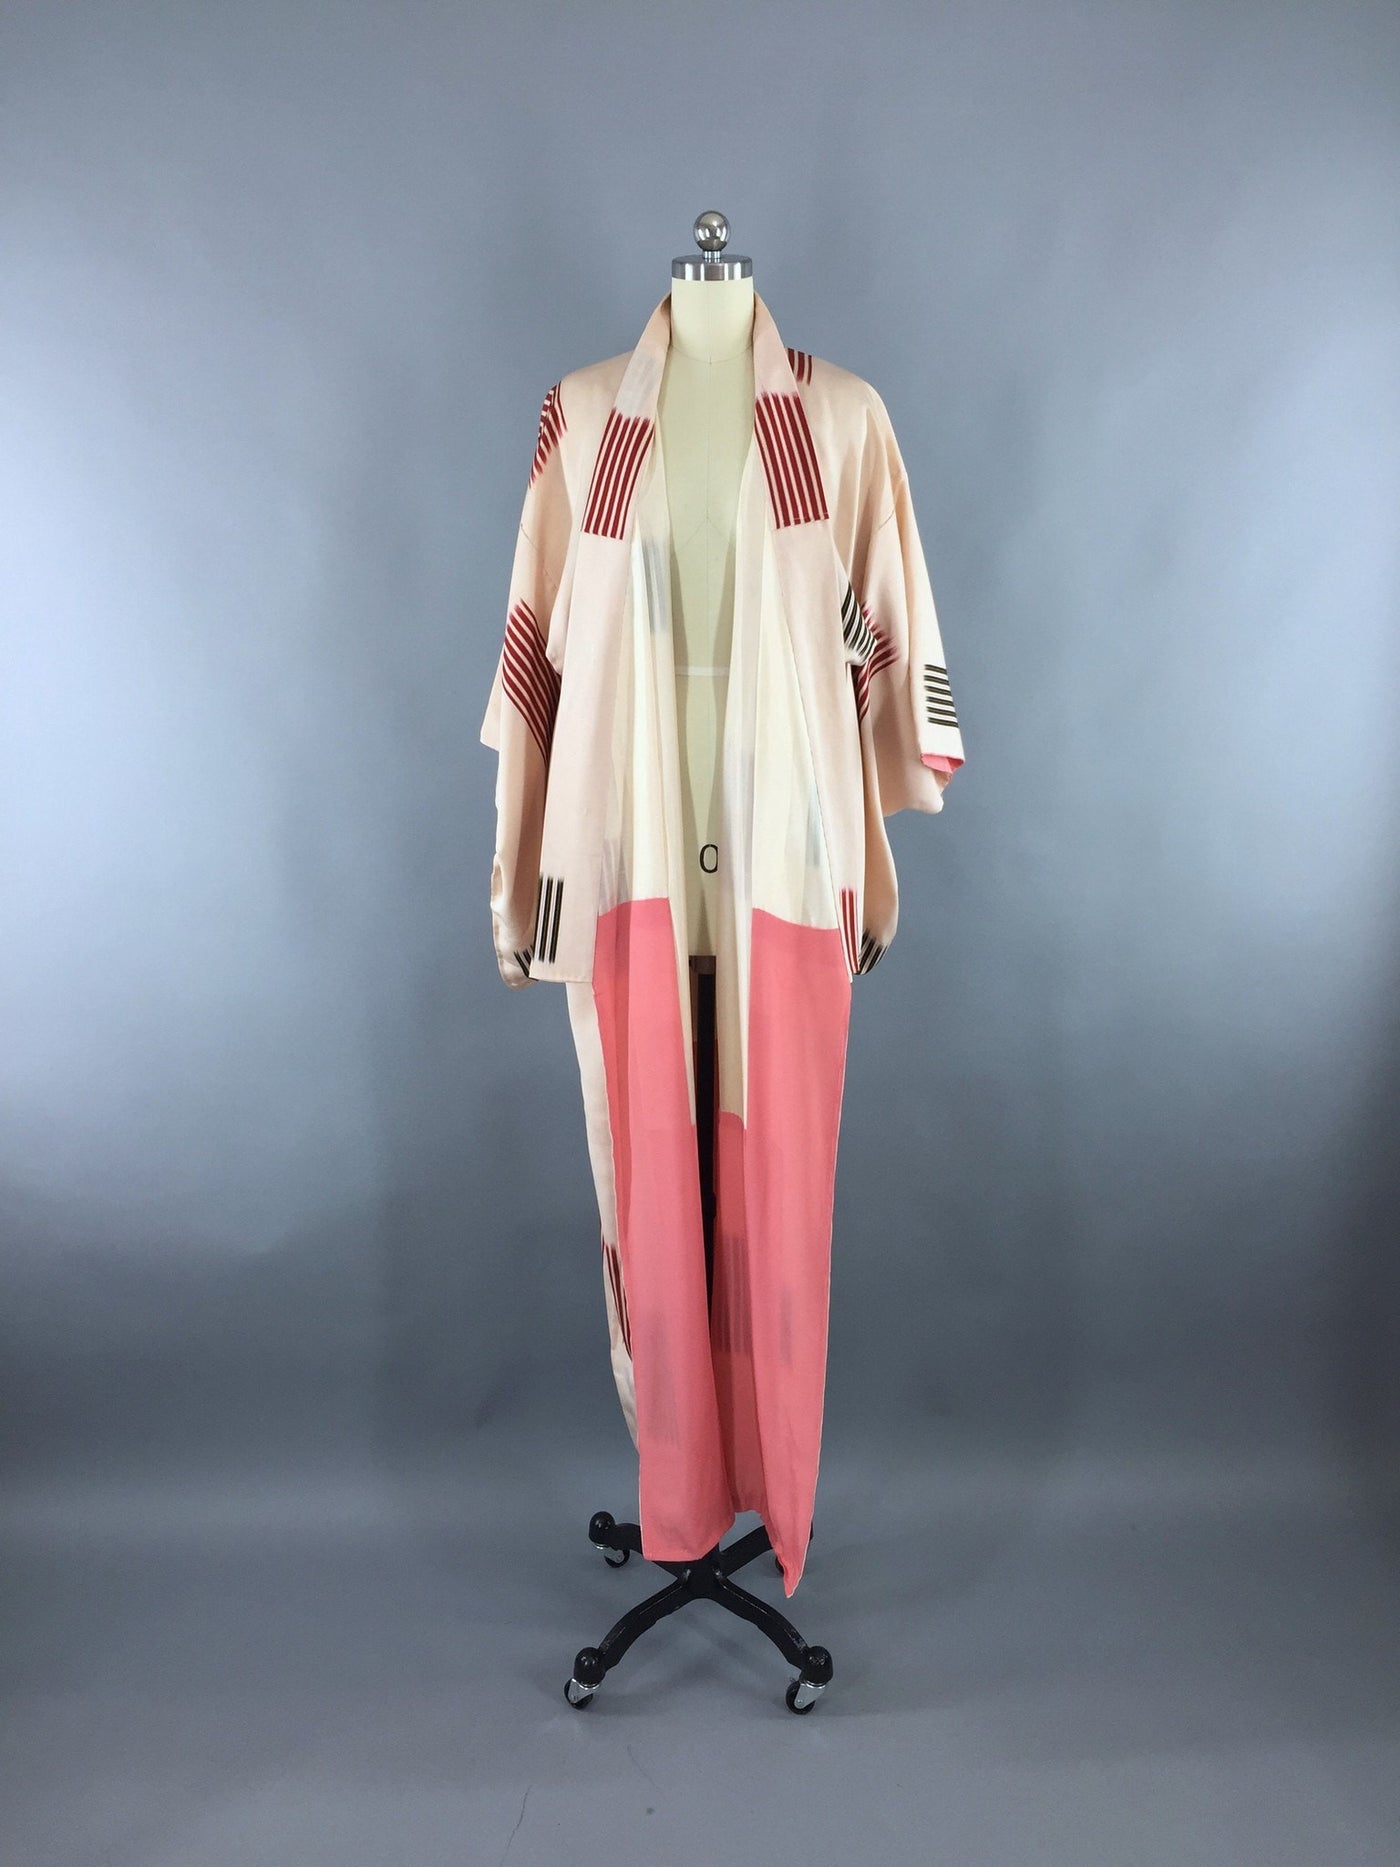 1950s Vintage Silk Kimono Robe / Peach Red Abstract Stripes - ThisBlueBird